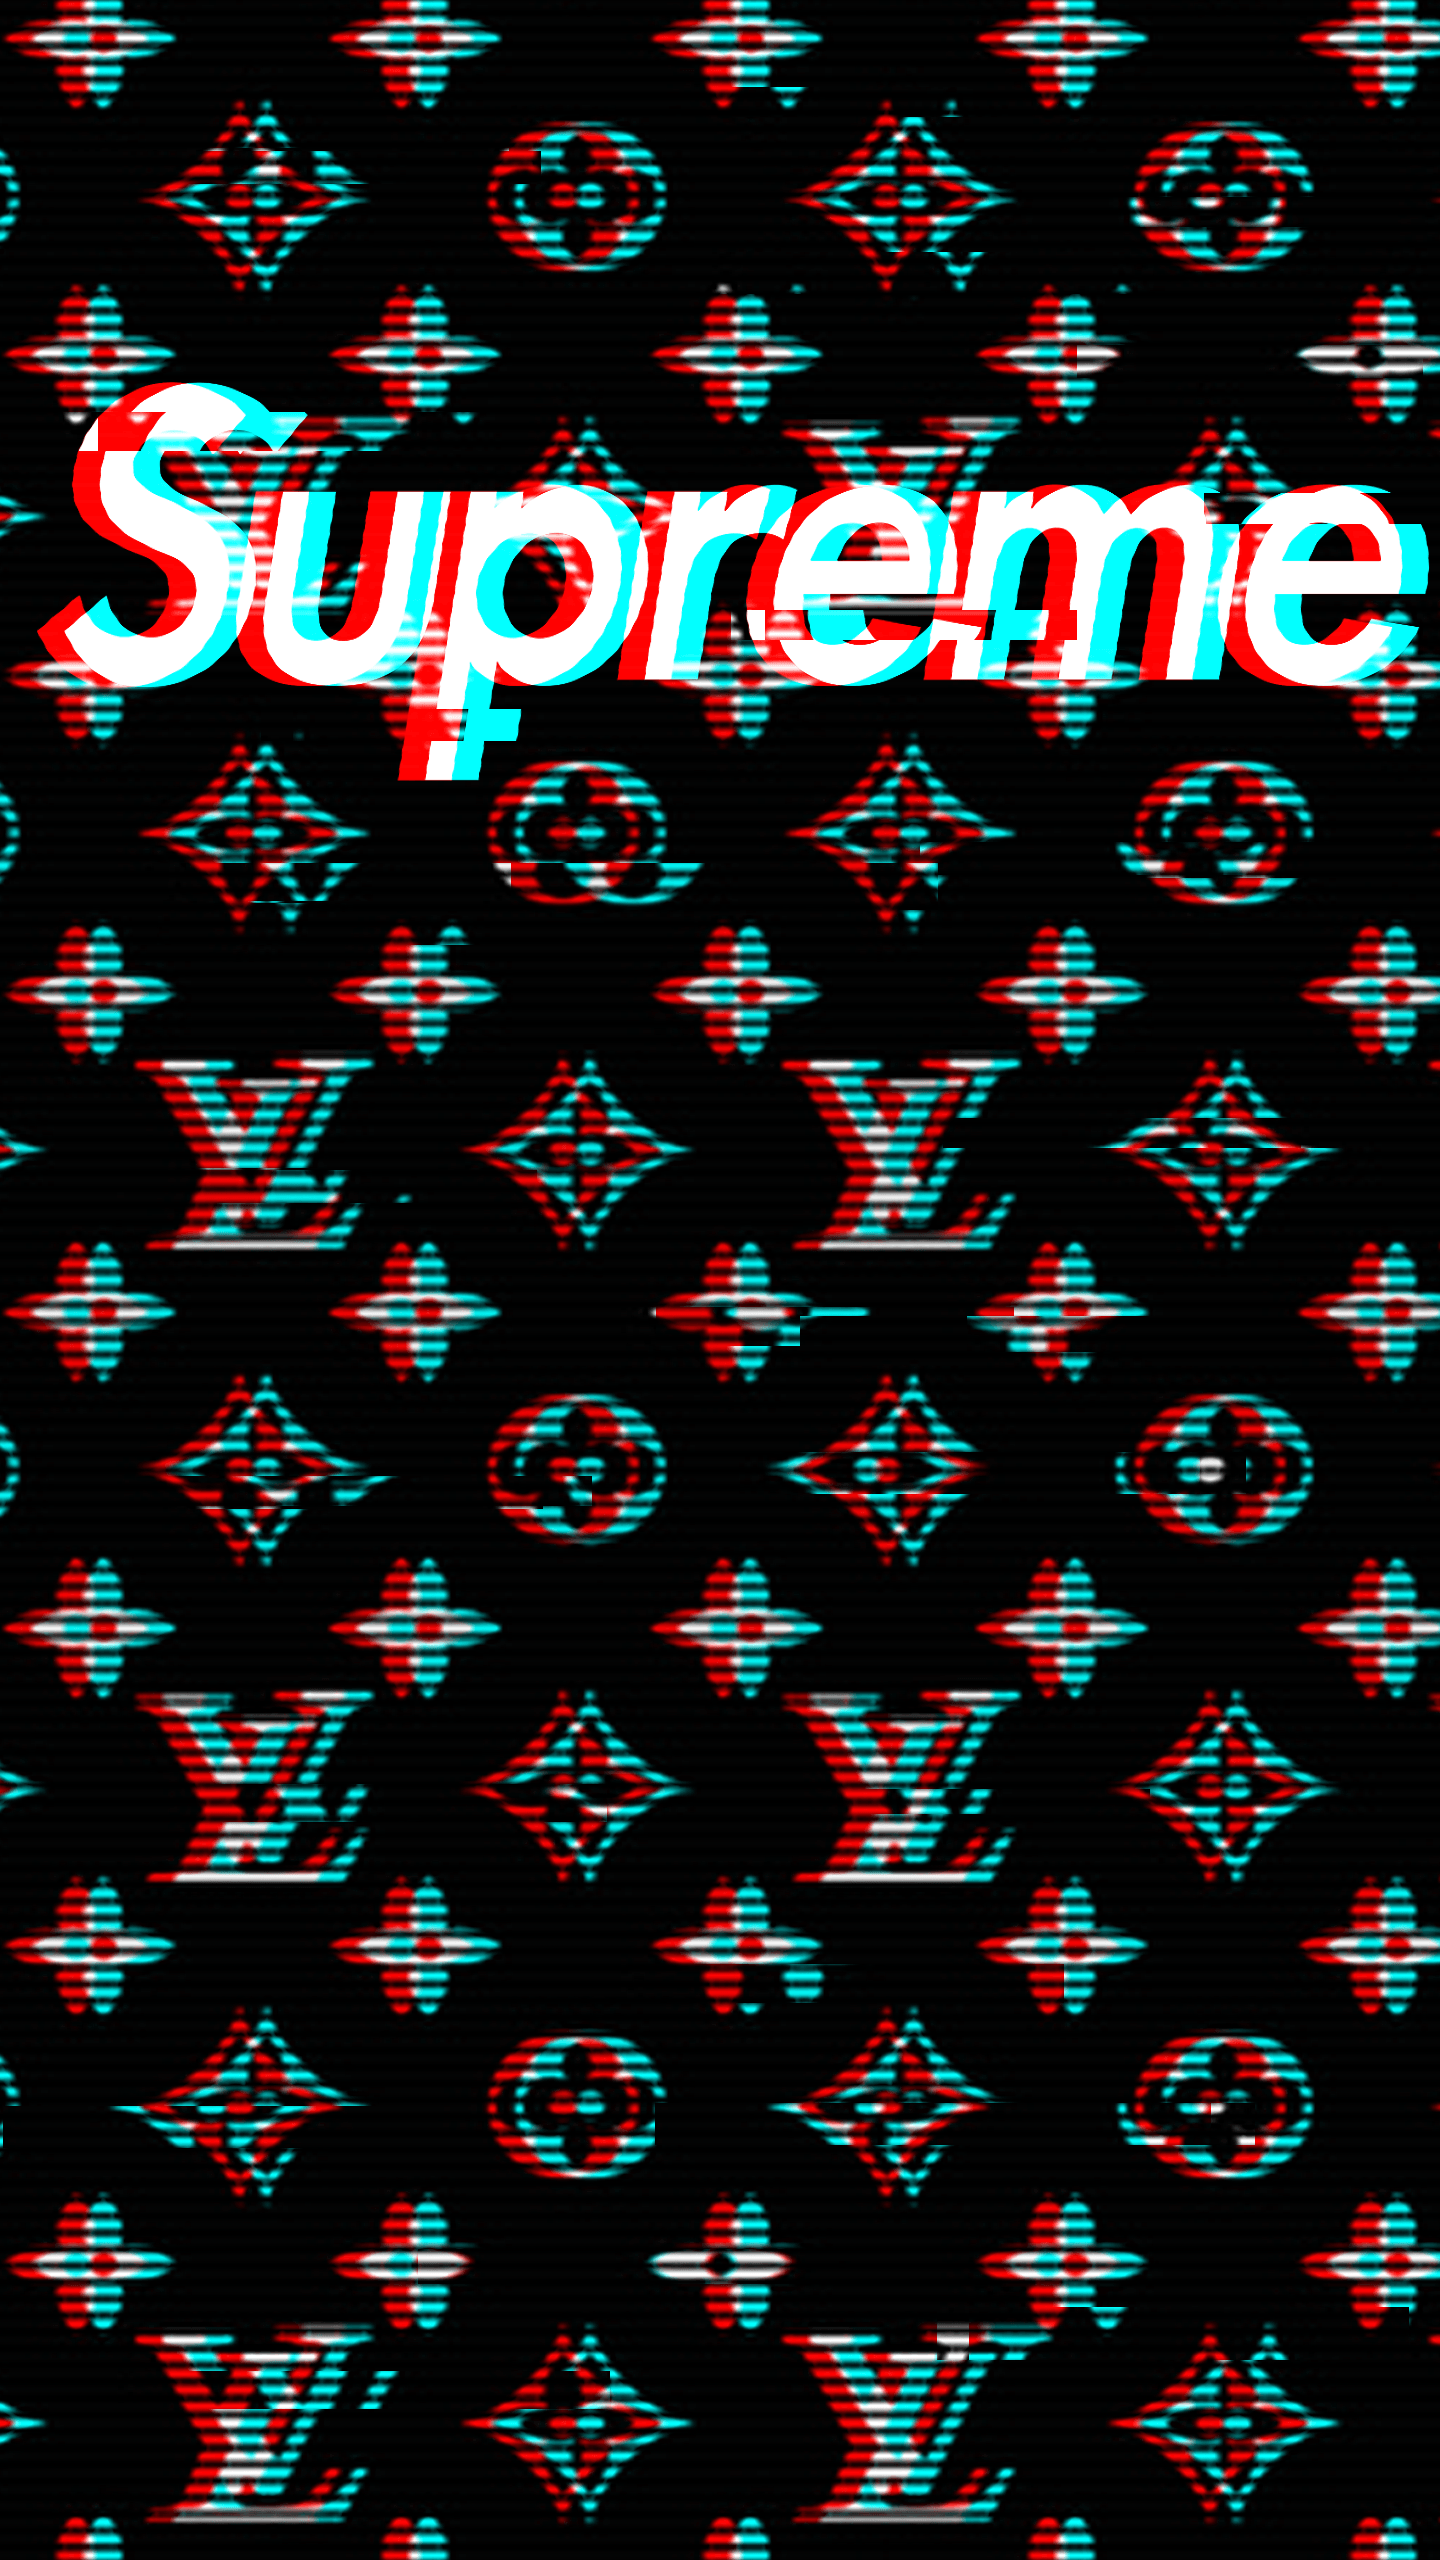 Black Louis Vuitton Supreme Wallpapers - Top Free Black Louis